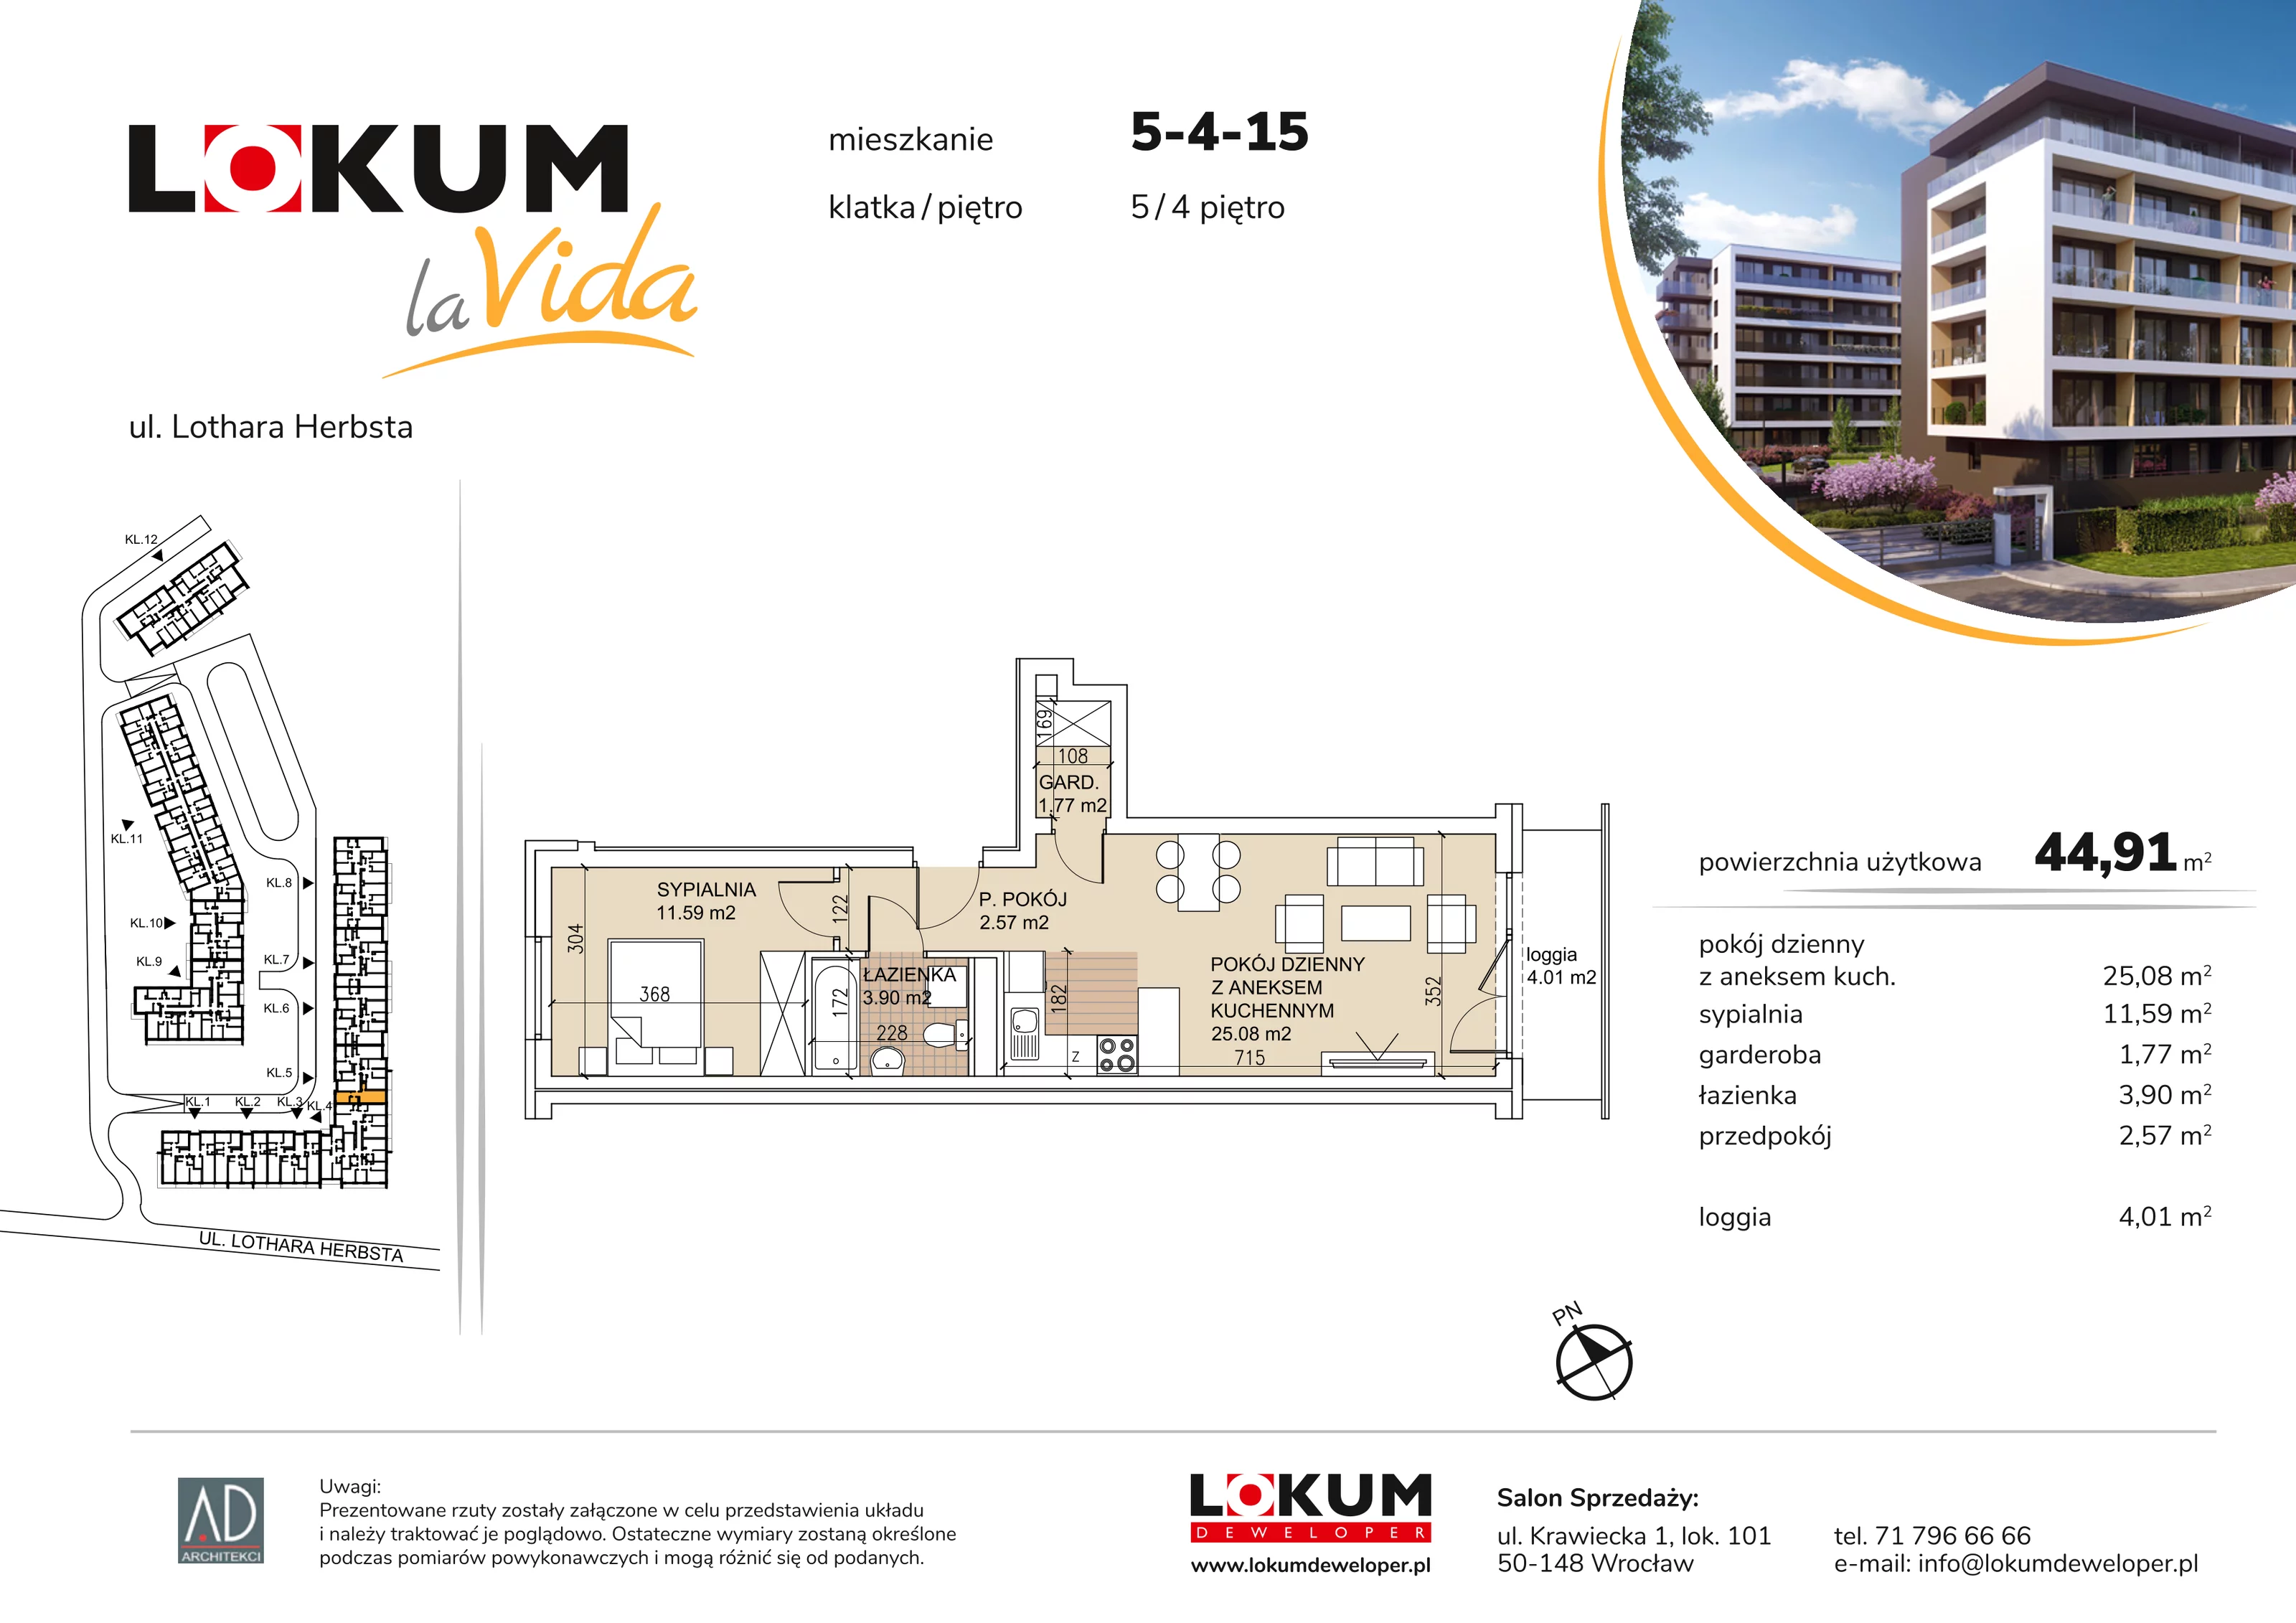 Mieszkanie 44,91 m², piętro 4, oferta nr 5-4-15, Lokum la Vida, Wrocław, Sołtysowice, ul. Lothara Herbsta